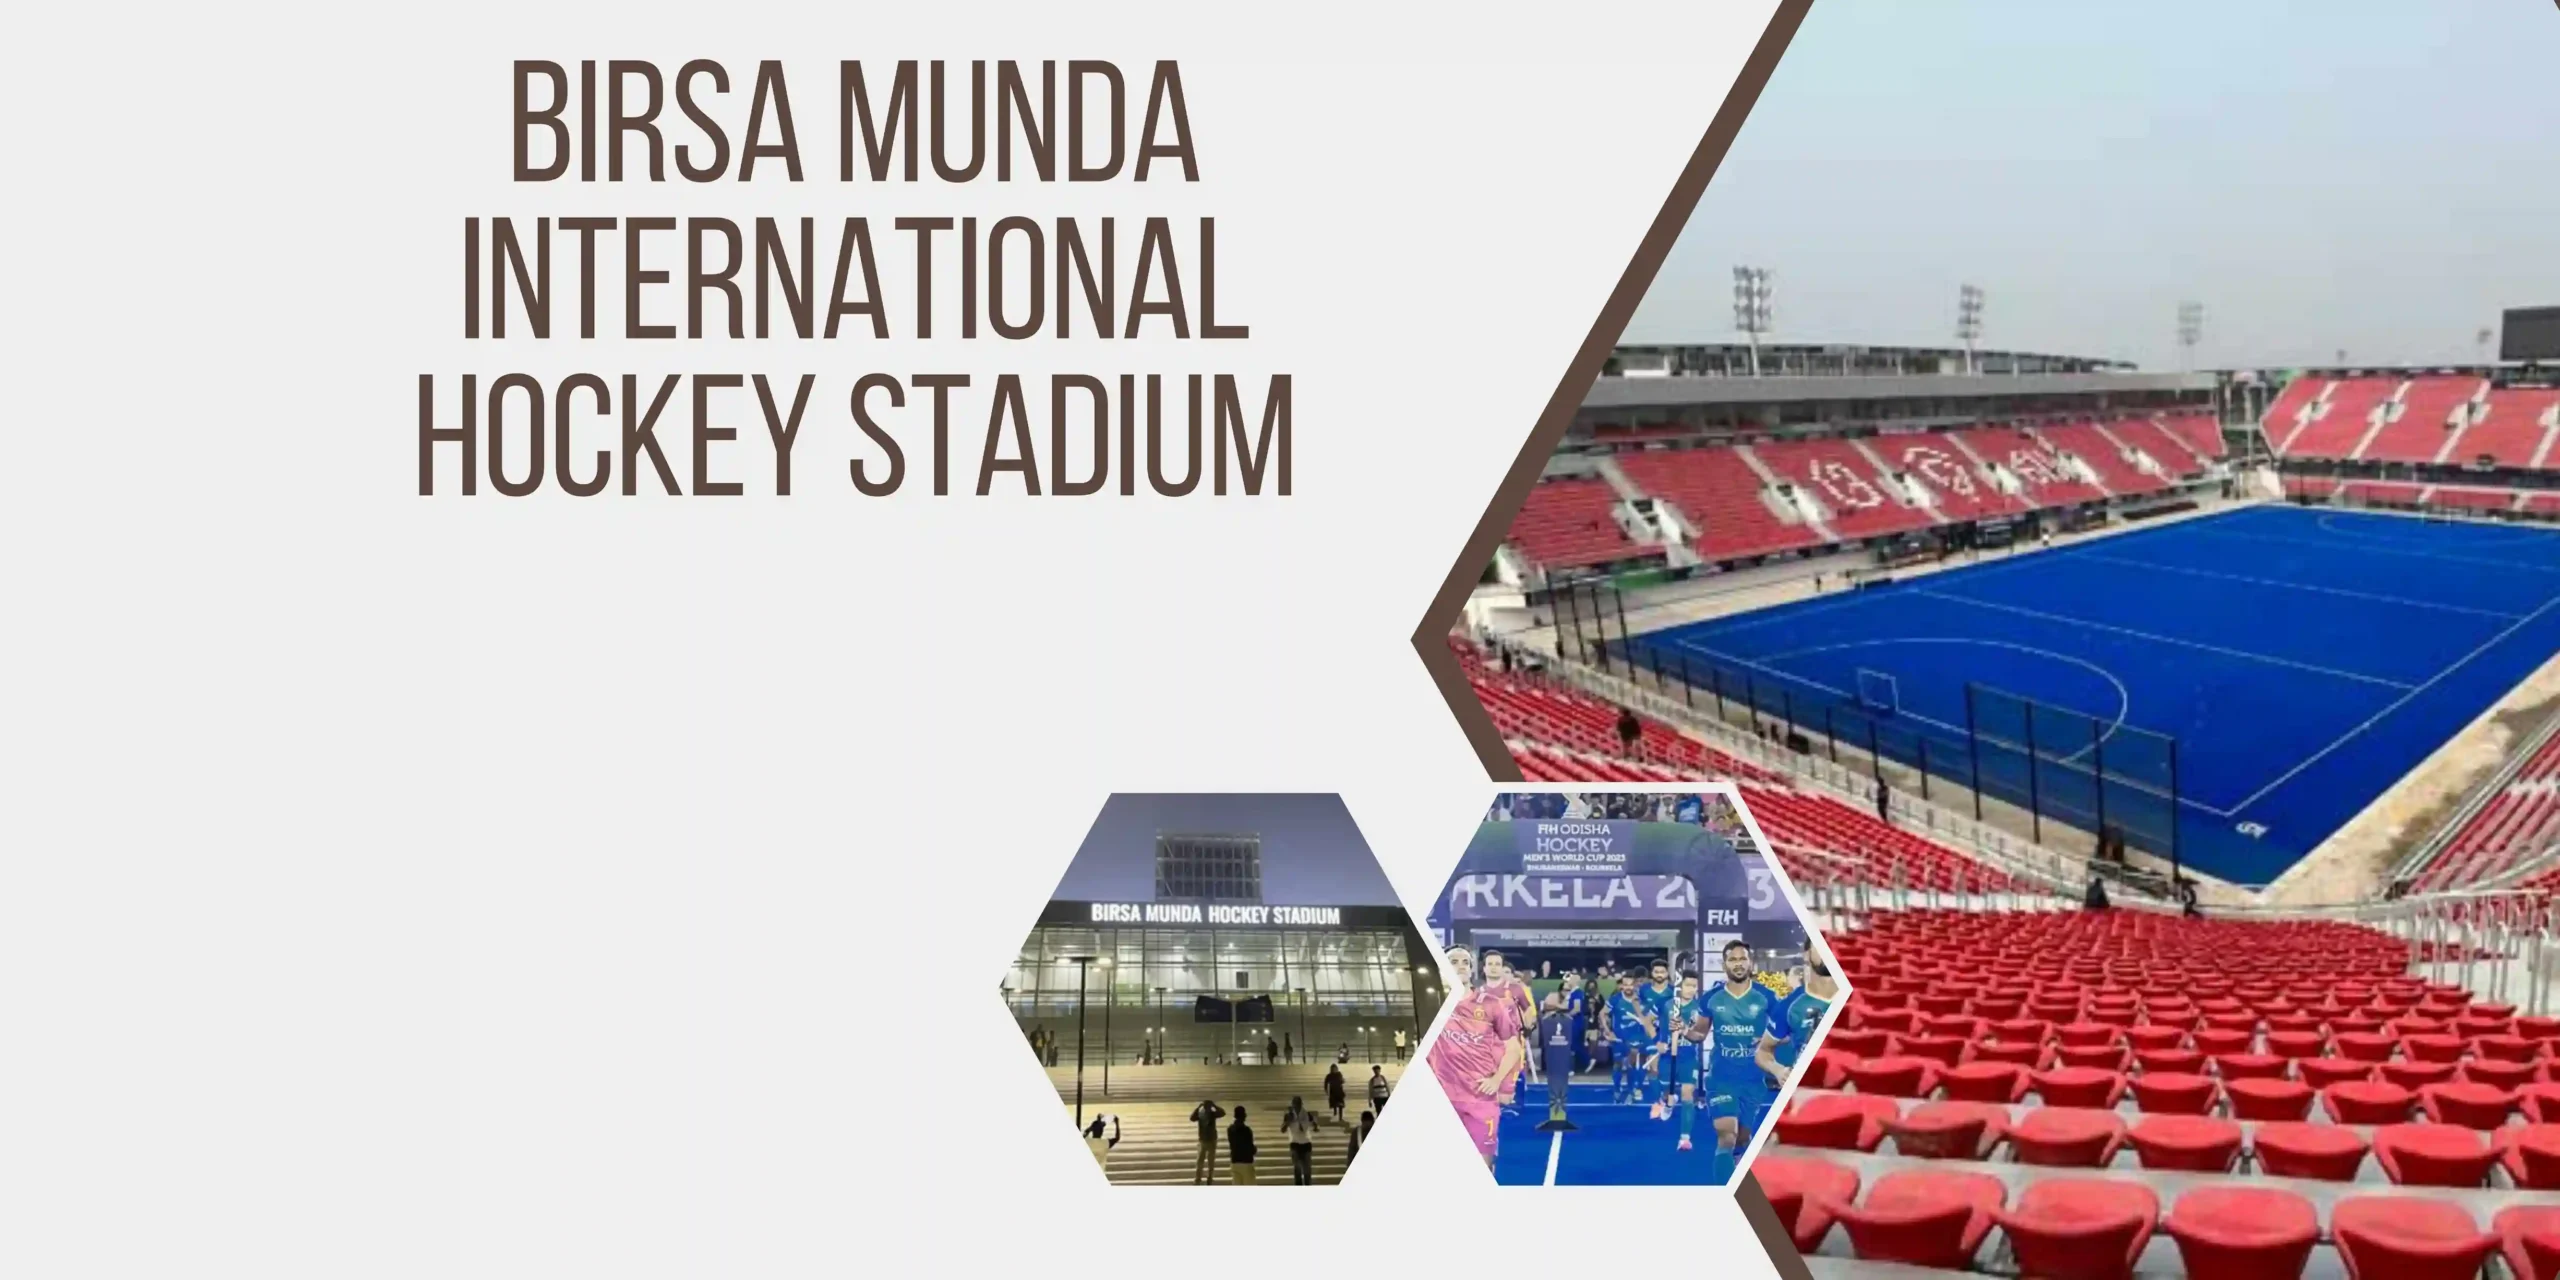 Birsa Munda International Hockey Stadium